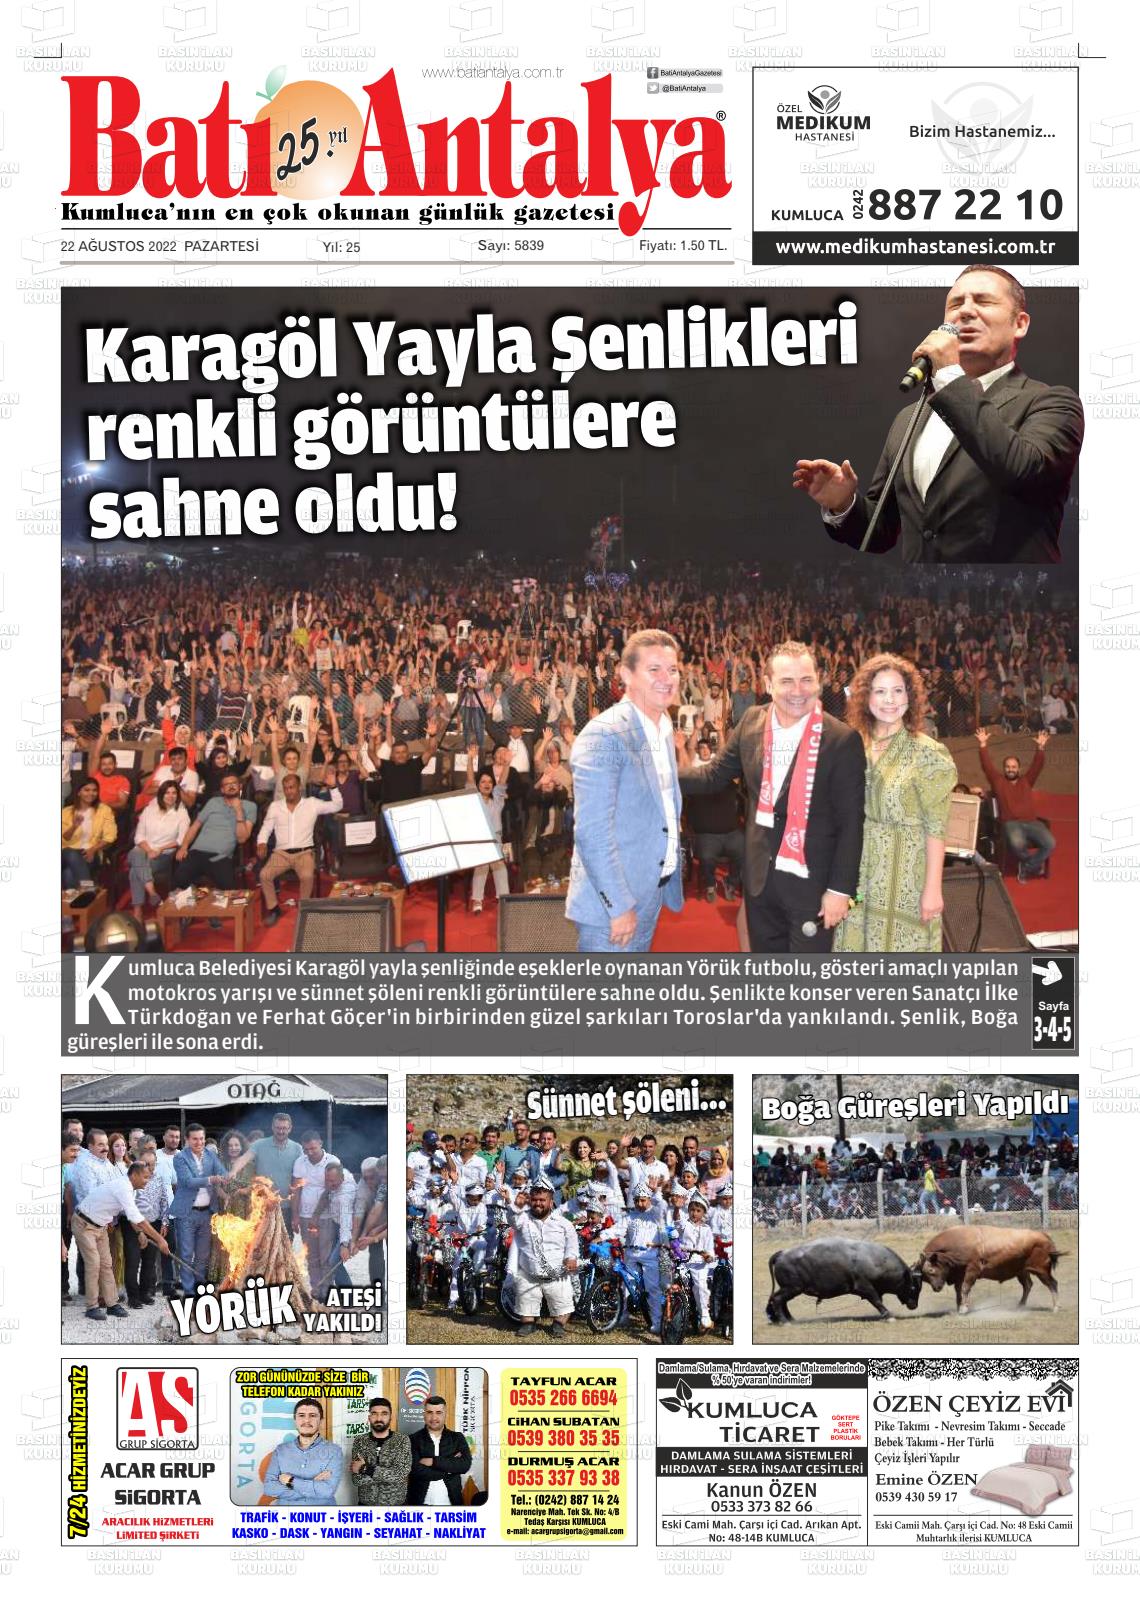 22 Ağustos 2022 Batı Antalya Gazete Manşeti